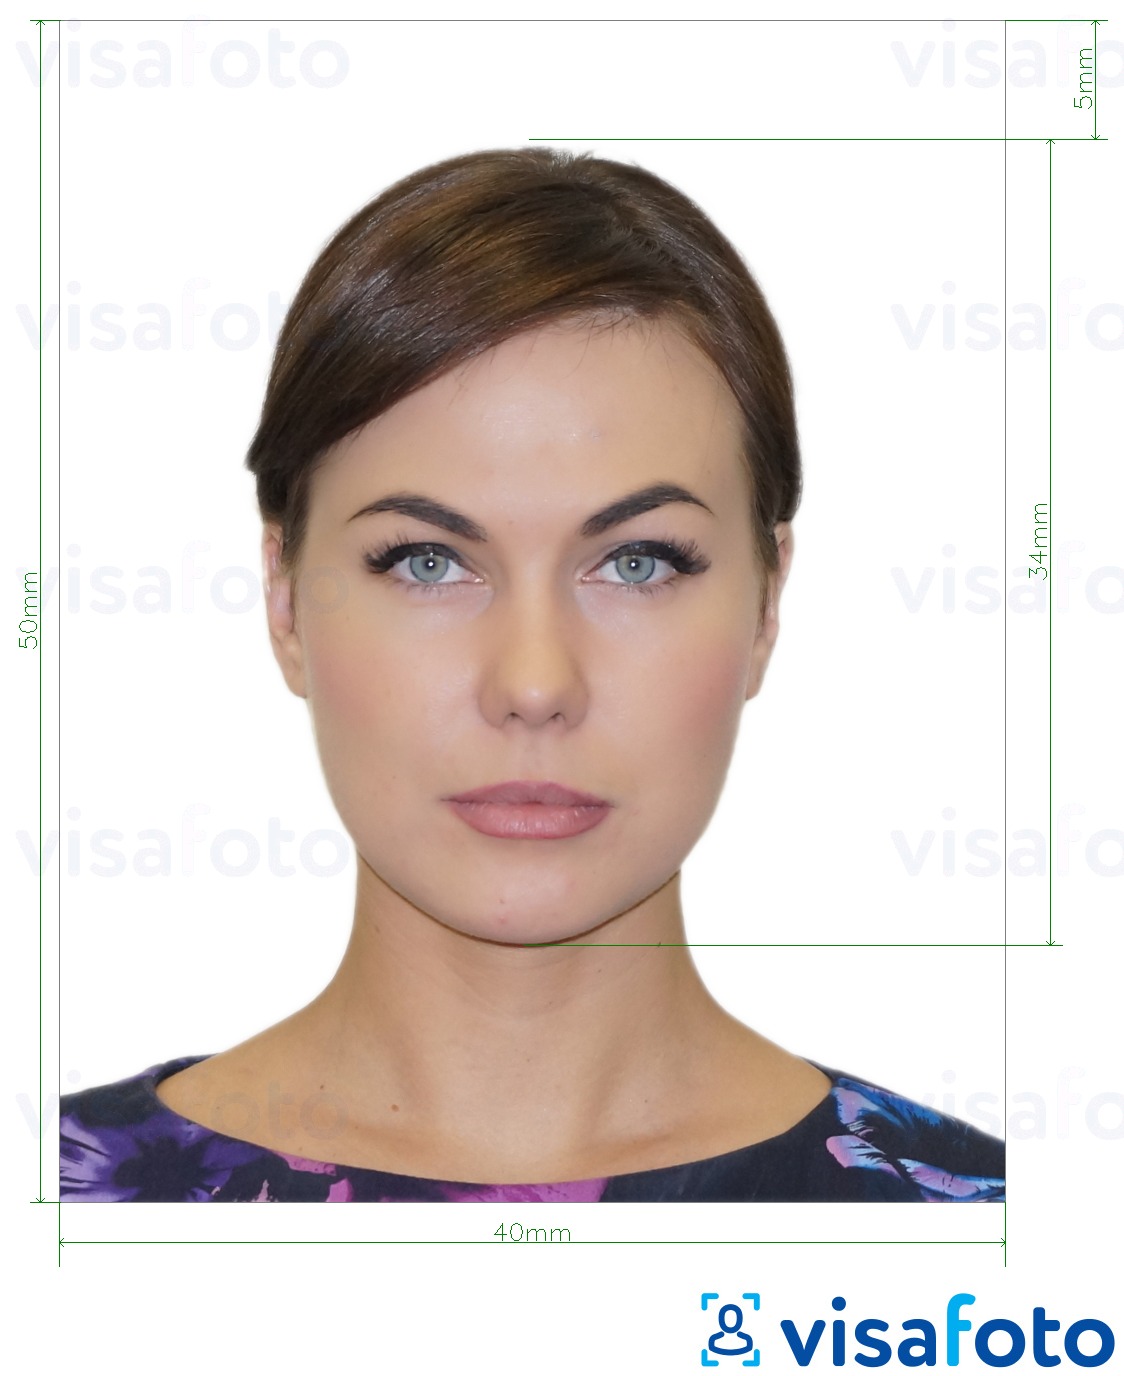 Eksempel på billede for Albanien e-visum 4x5 cm med præcis størrelsesspecifikation.